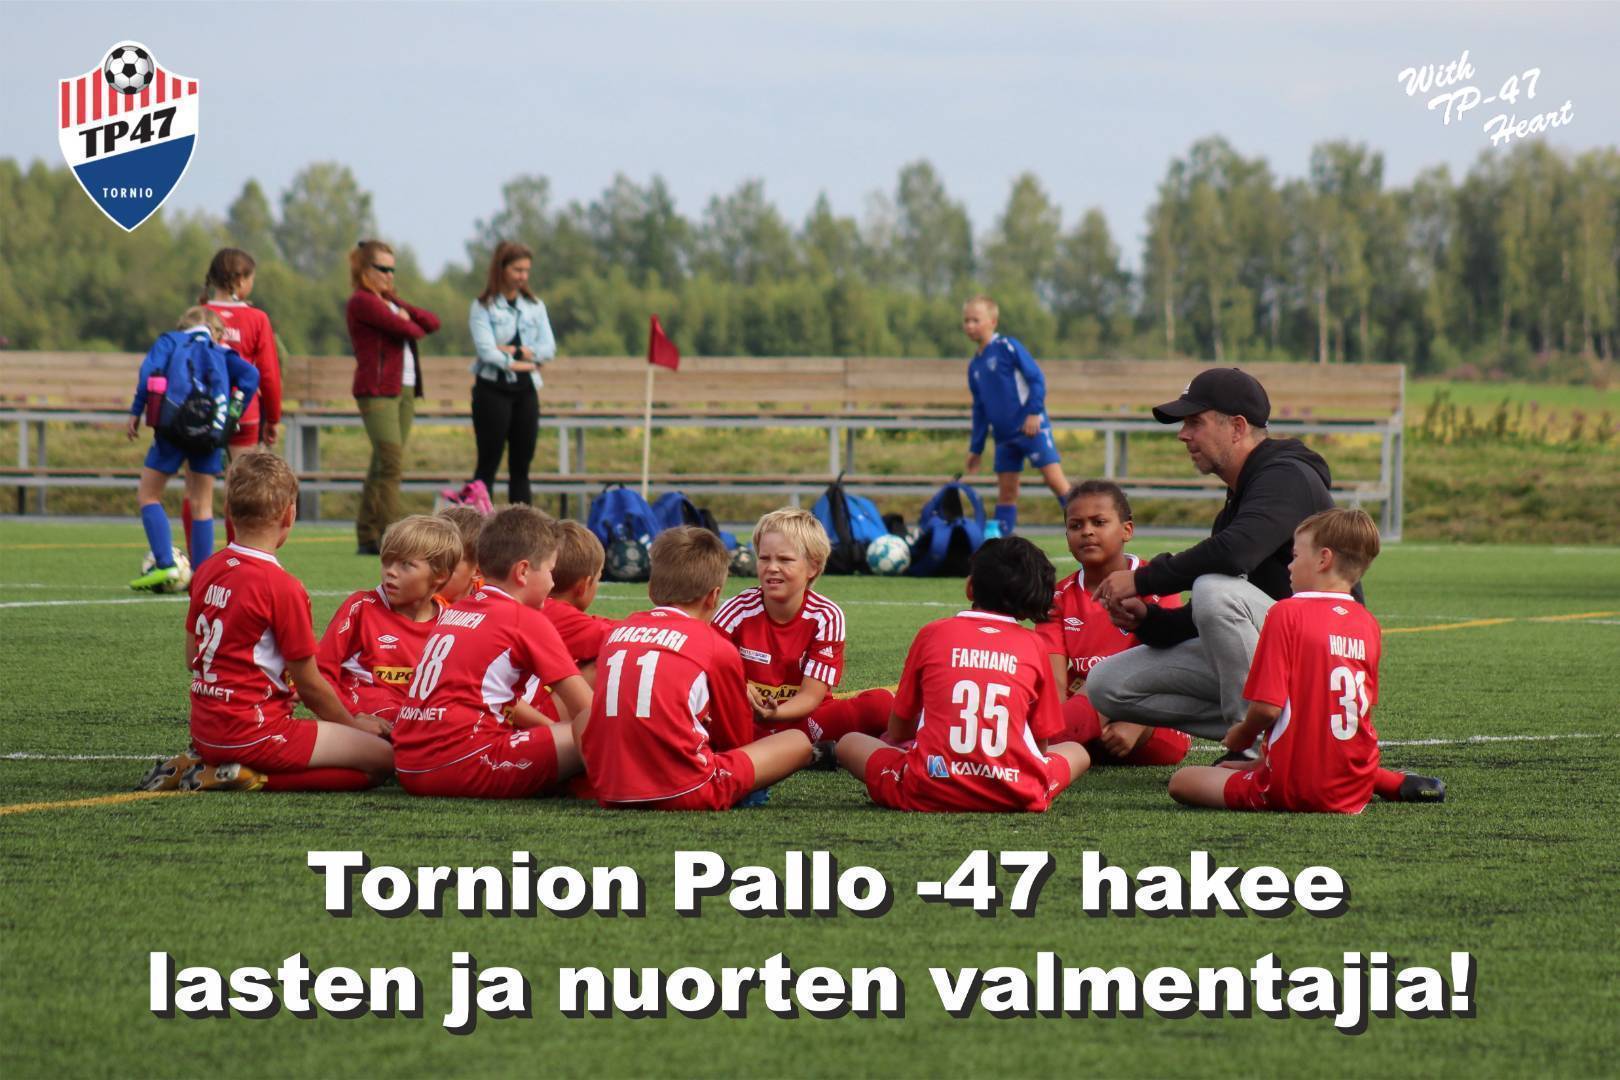 Tornion Pallo -47 hakee lasten ja nuorten valmentajia